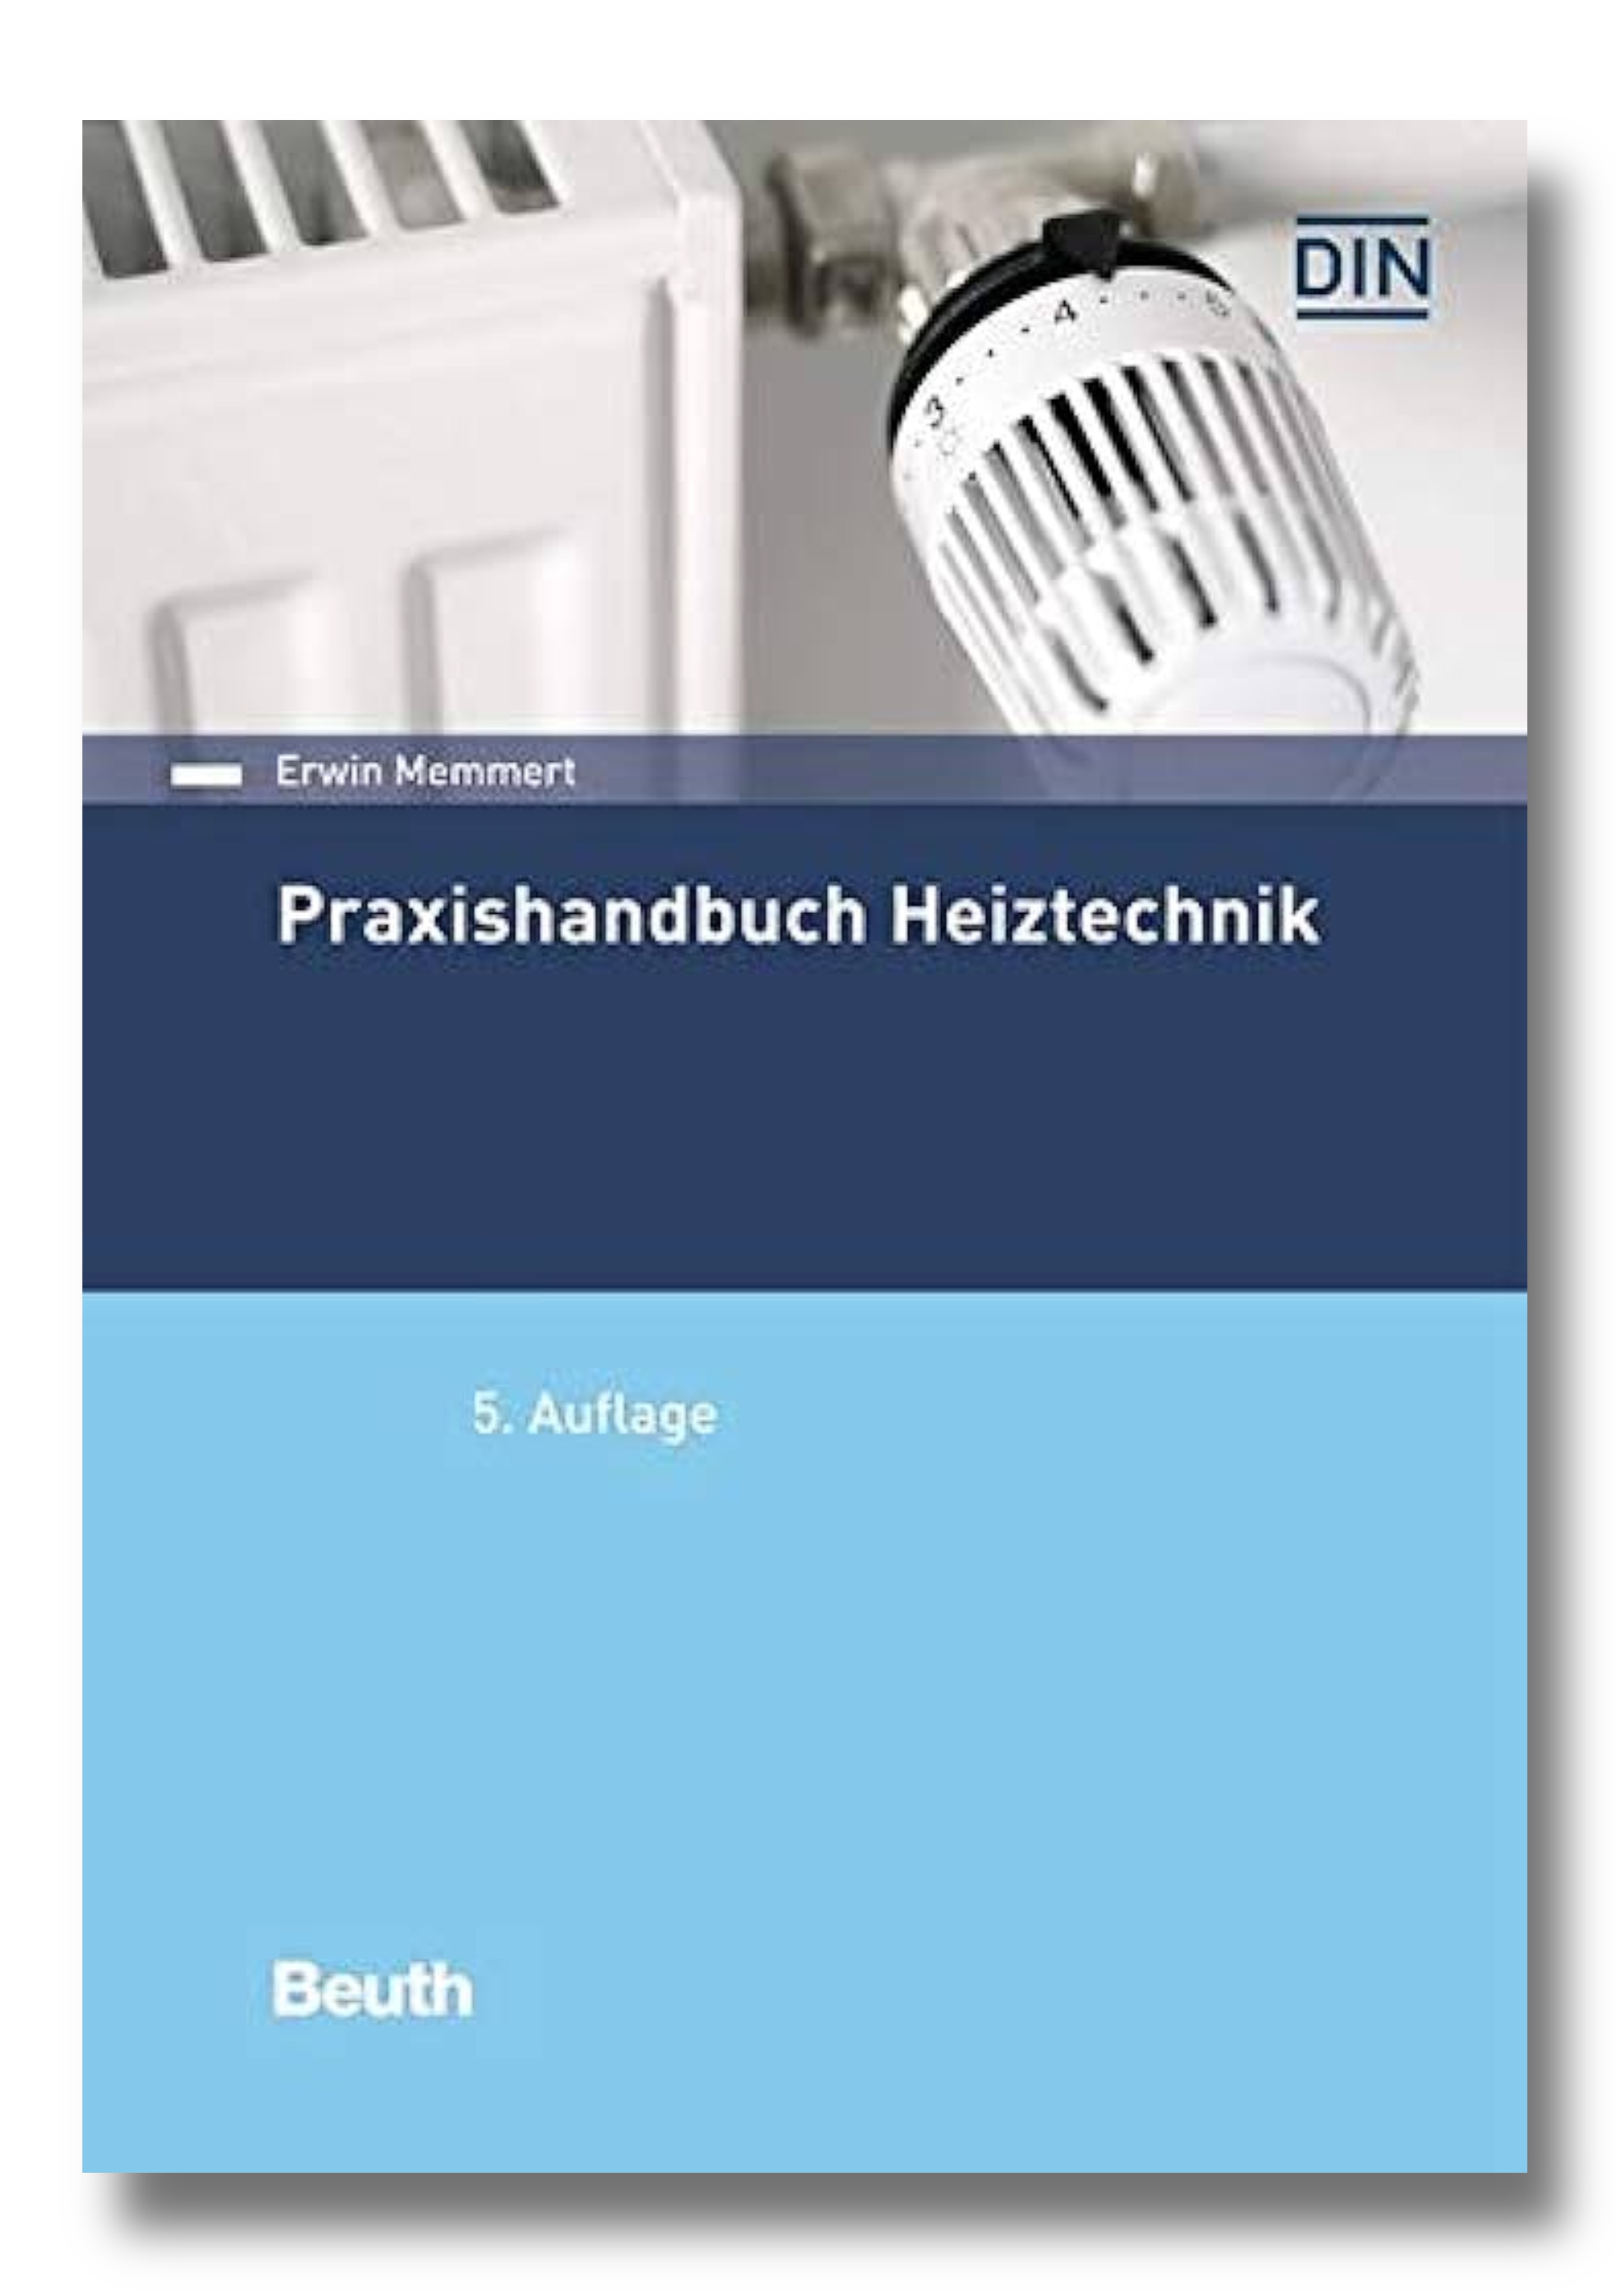 Praxishandbuch Heiztechnik